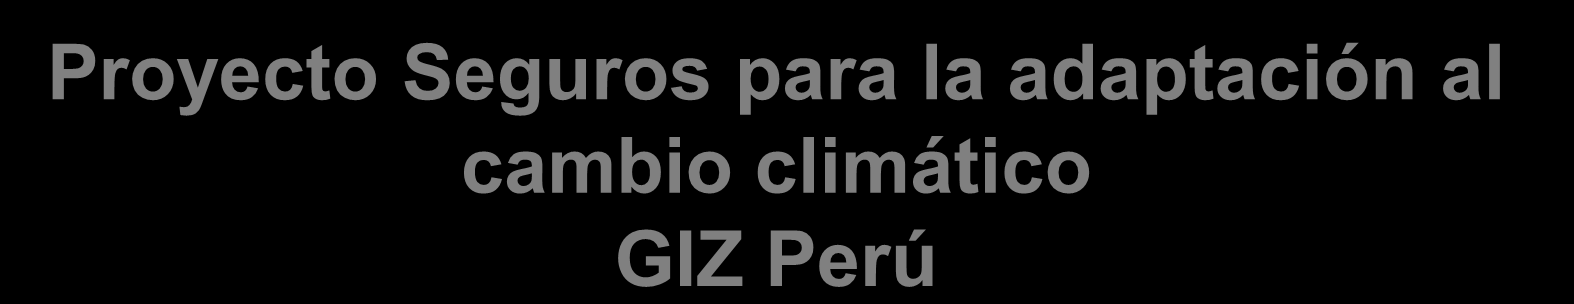 Proyecto Seguros para la adaptación al cambio climático GIZ Perú